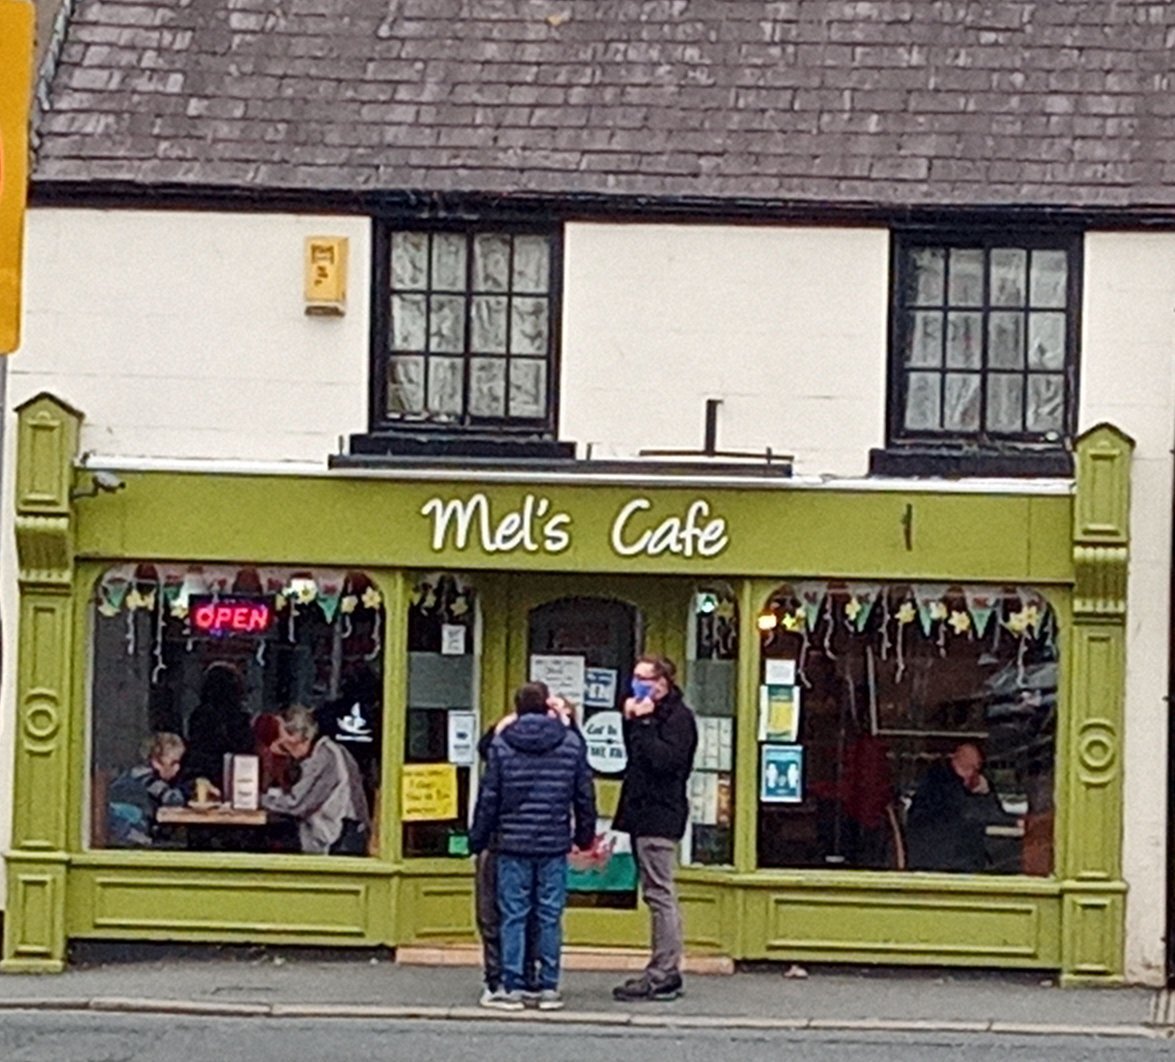 Mel's cafe